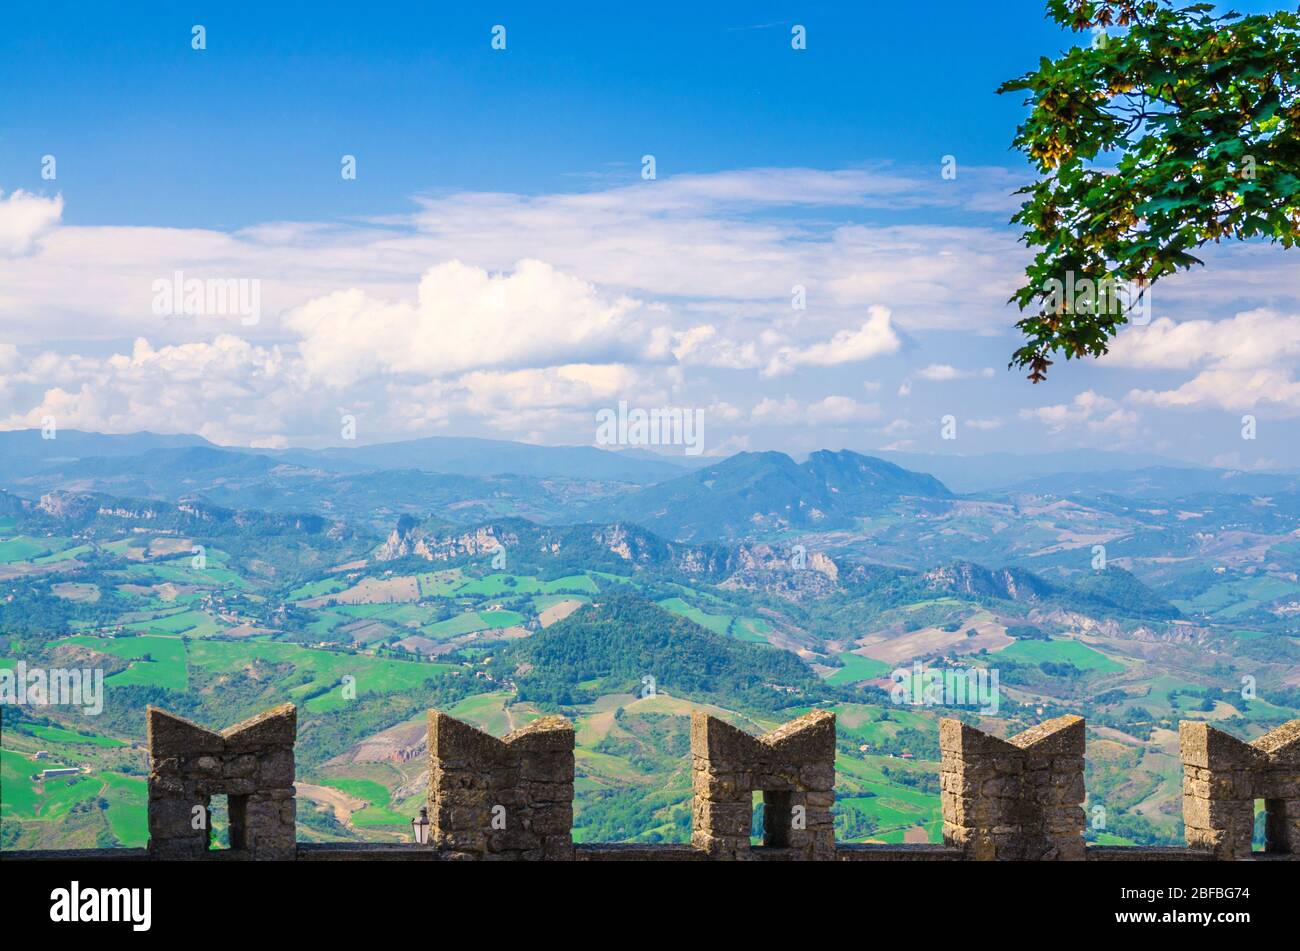 Luftbild oben panoramic view Landschaft mit Tal, grünen Hügeln, Feldern und Dörfern der Republik San Marino Vorstadt mit blauen Himmel weißen Wolken Stockfoto